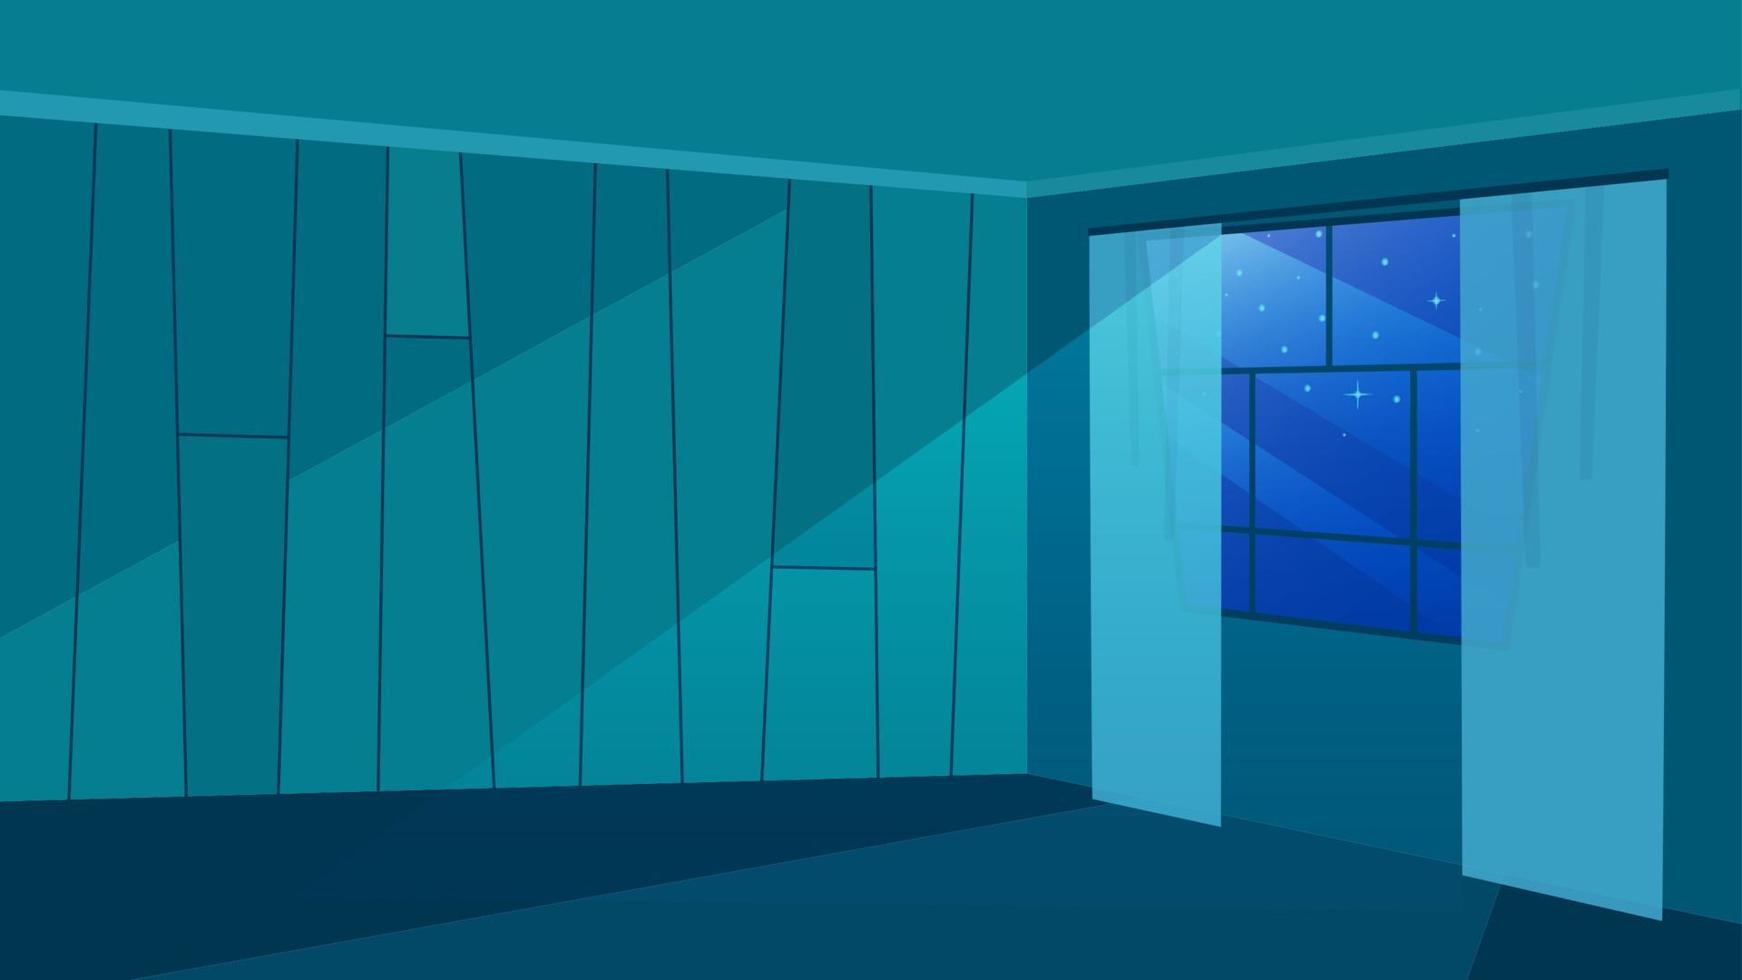 habitación vacía en la ilustración de vector plano de rayos de luz de luna. Paredes de moda con motivos geométricos. cristal de ventana moderno con cortinas. Arquitectura minimalista, diseño de apartamentos en casa en vista de oscuridad.